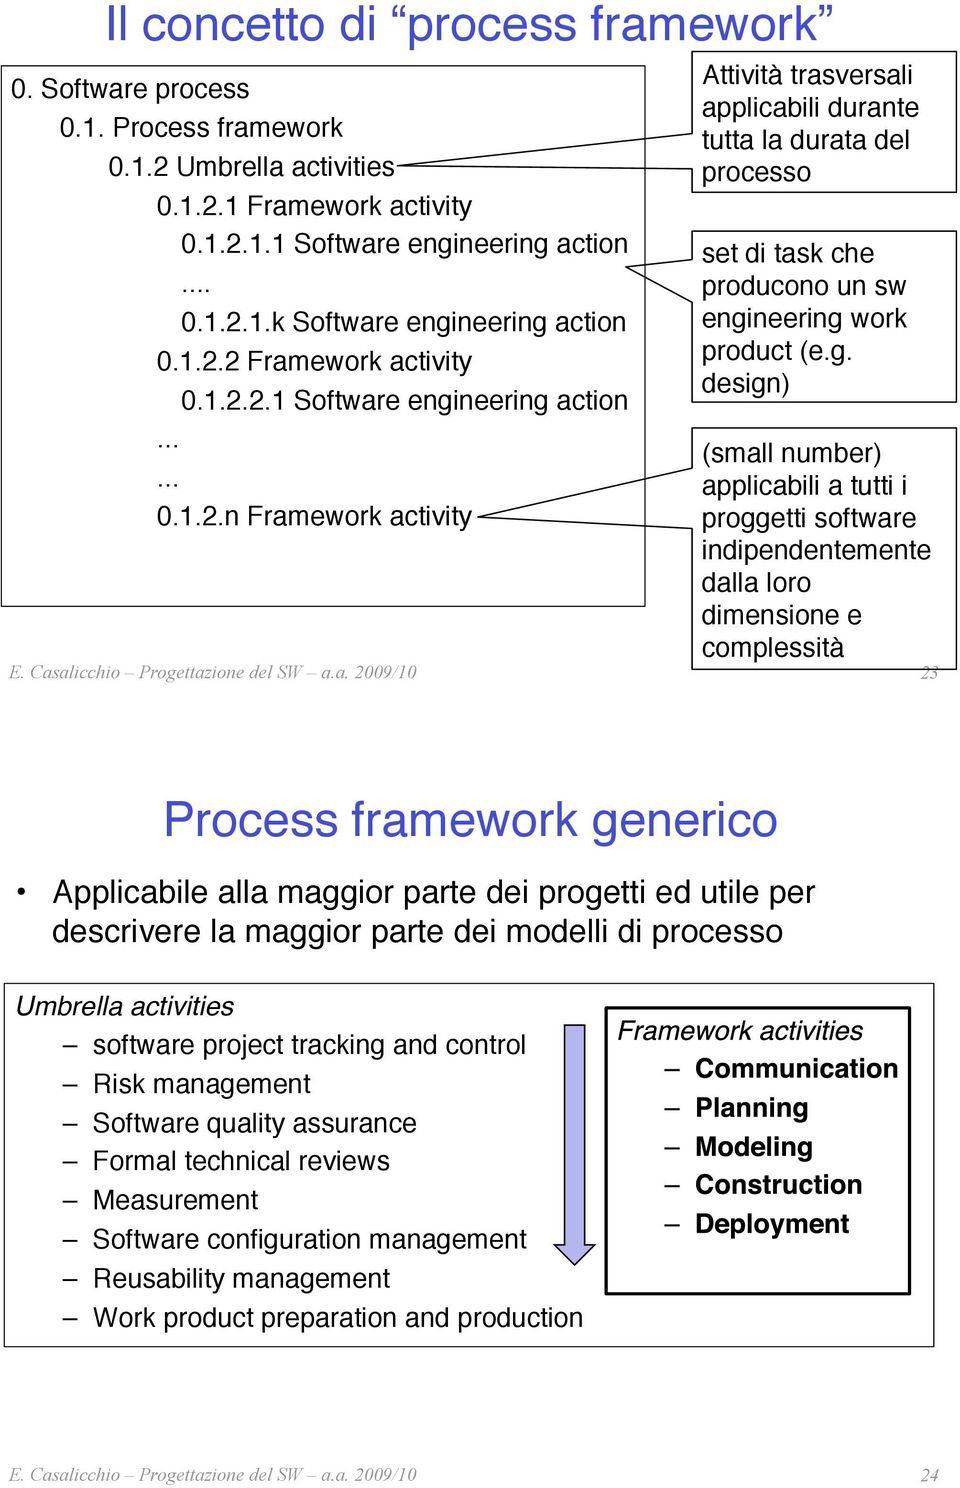 g. design)" (small number) applicabili a tutti i proggetti software indipendentemente dalla loro dimensione e complessità" 23 Process framework generico" Applicabile alla maggior parte dei progetti